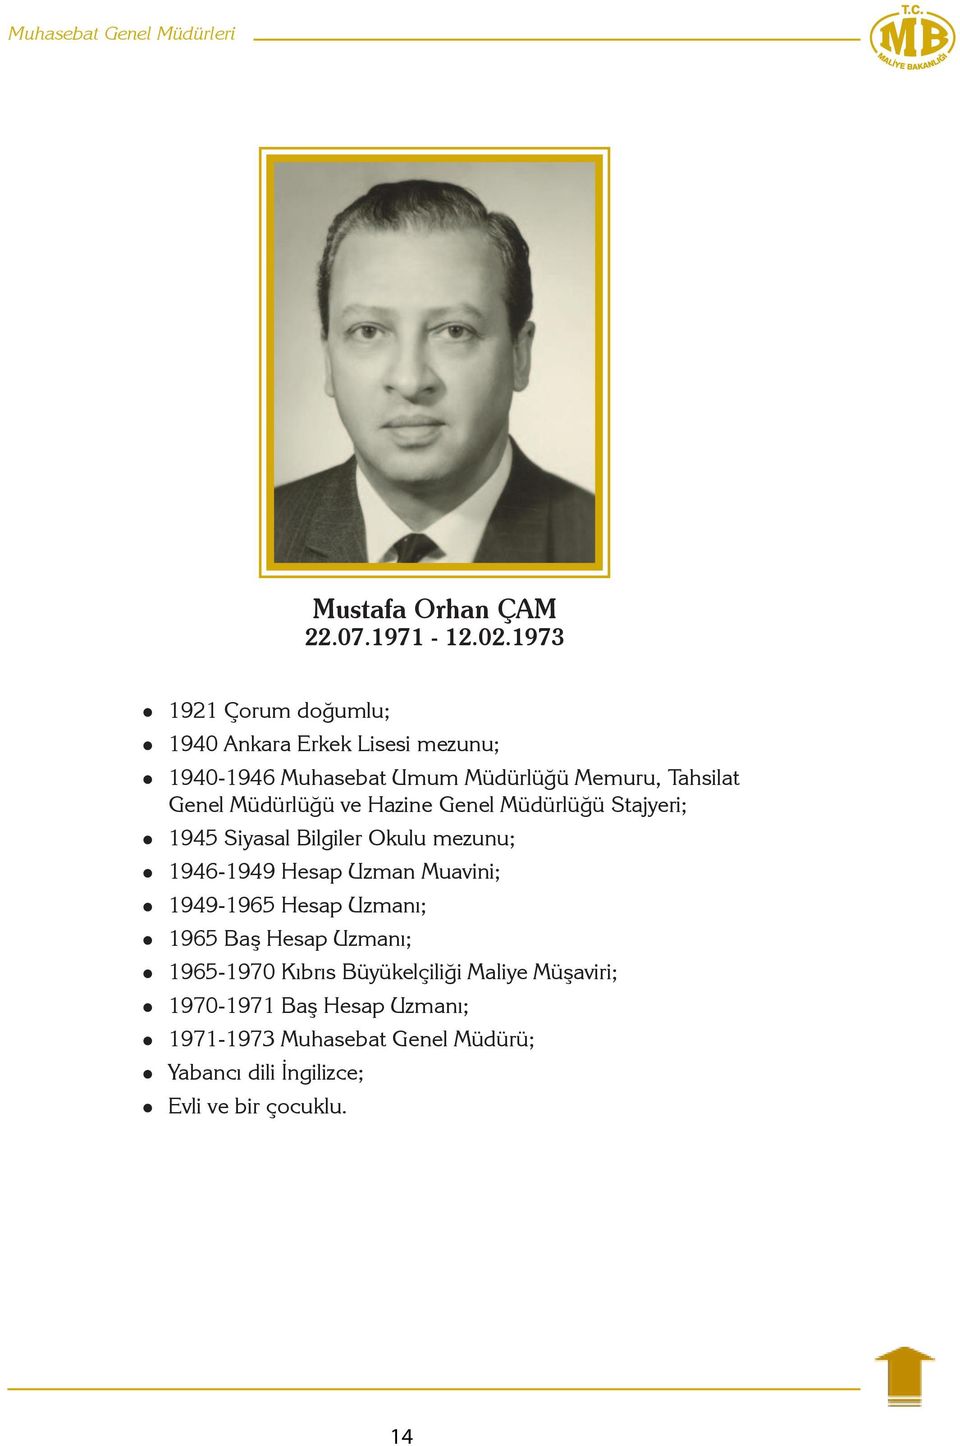 Müdürlüğü ve Hazine Genel Müdürlüğü Stajyeri; 1945 Siyasal Bilgiler Okulu mezunu; 1946-1949 Hesap Uzman Muavini; 1949-1965